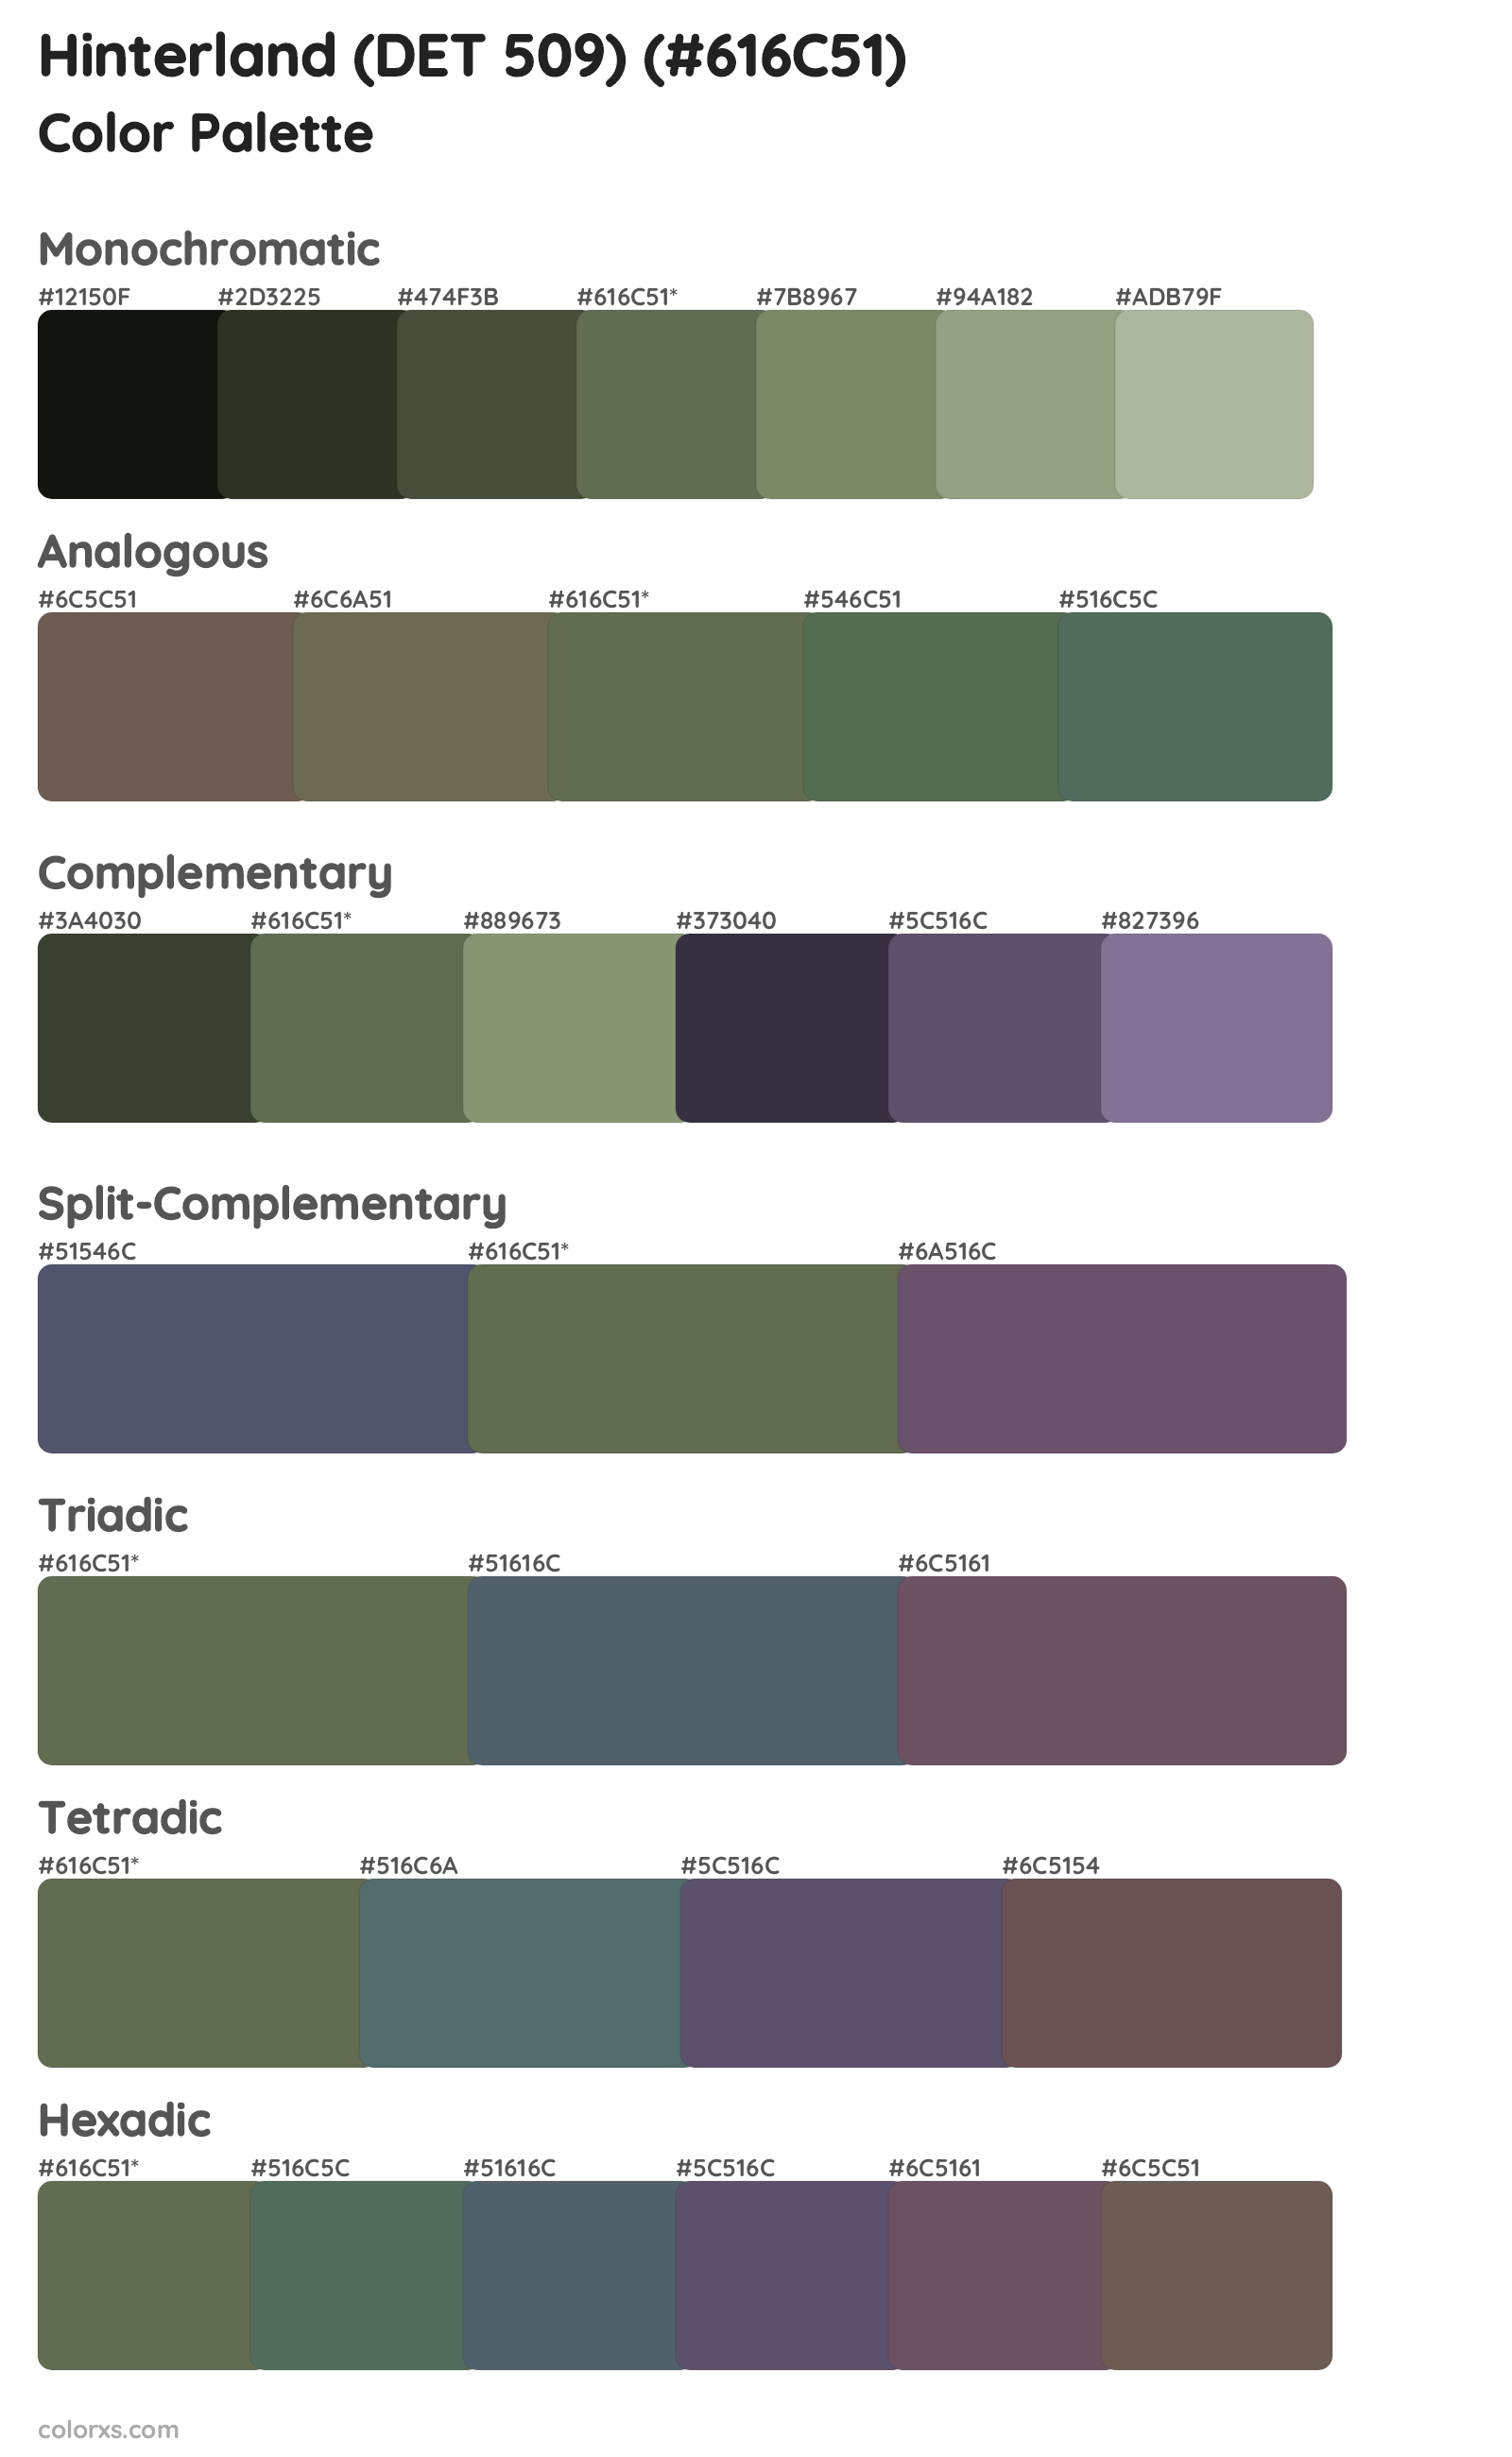 Hinterland (DET 509) Color Scheme Palettes